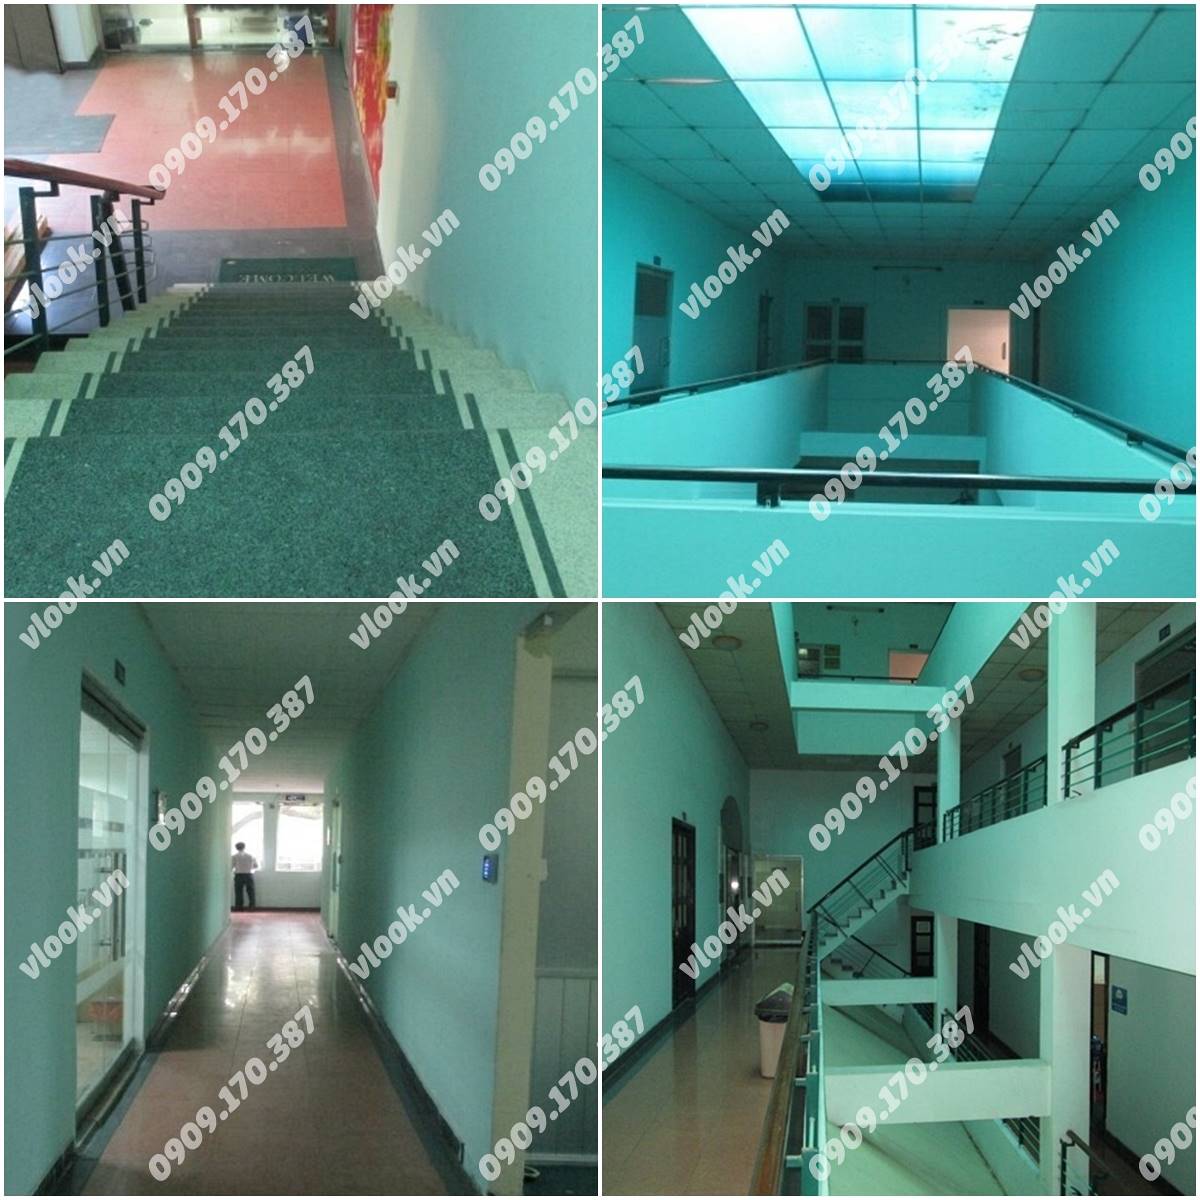 Cao ốc văn phòng cho thuê Duy Tân Plaza Cao Thắng Quận 10, TP.HCM - vlook.vn